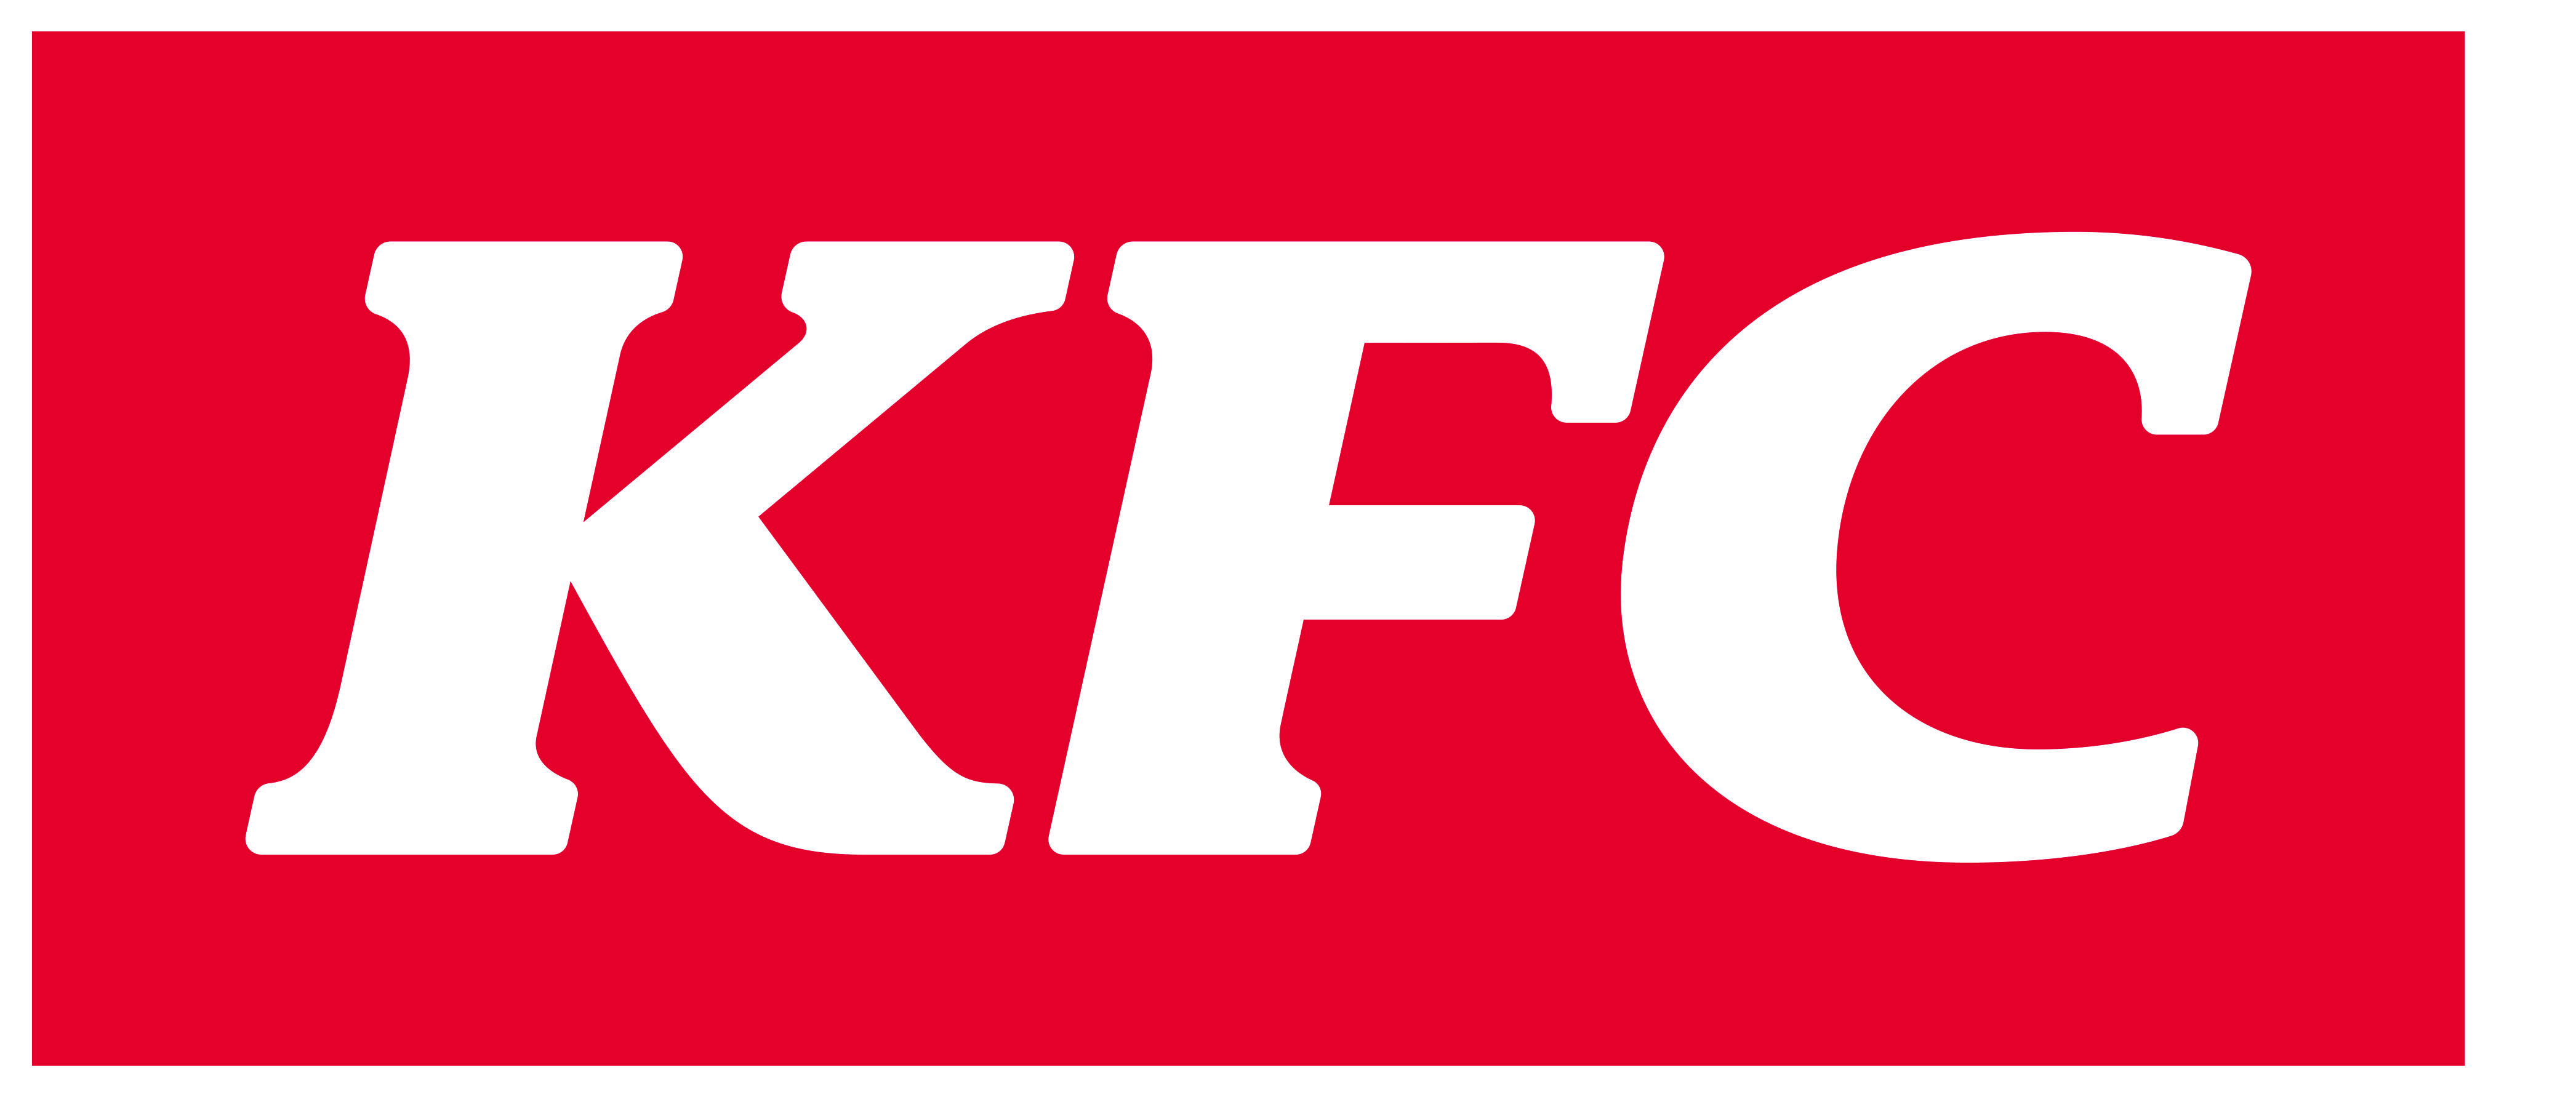 Arrest Made in KFC Burglary